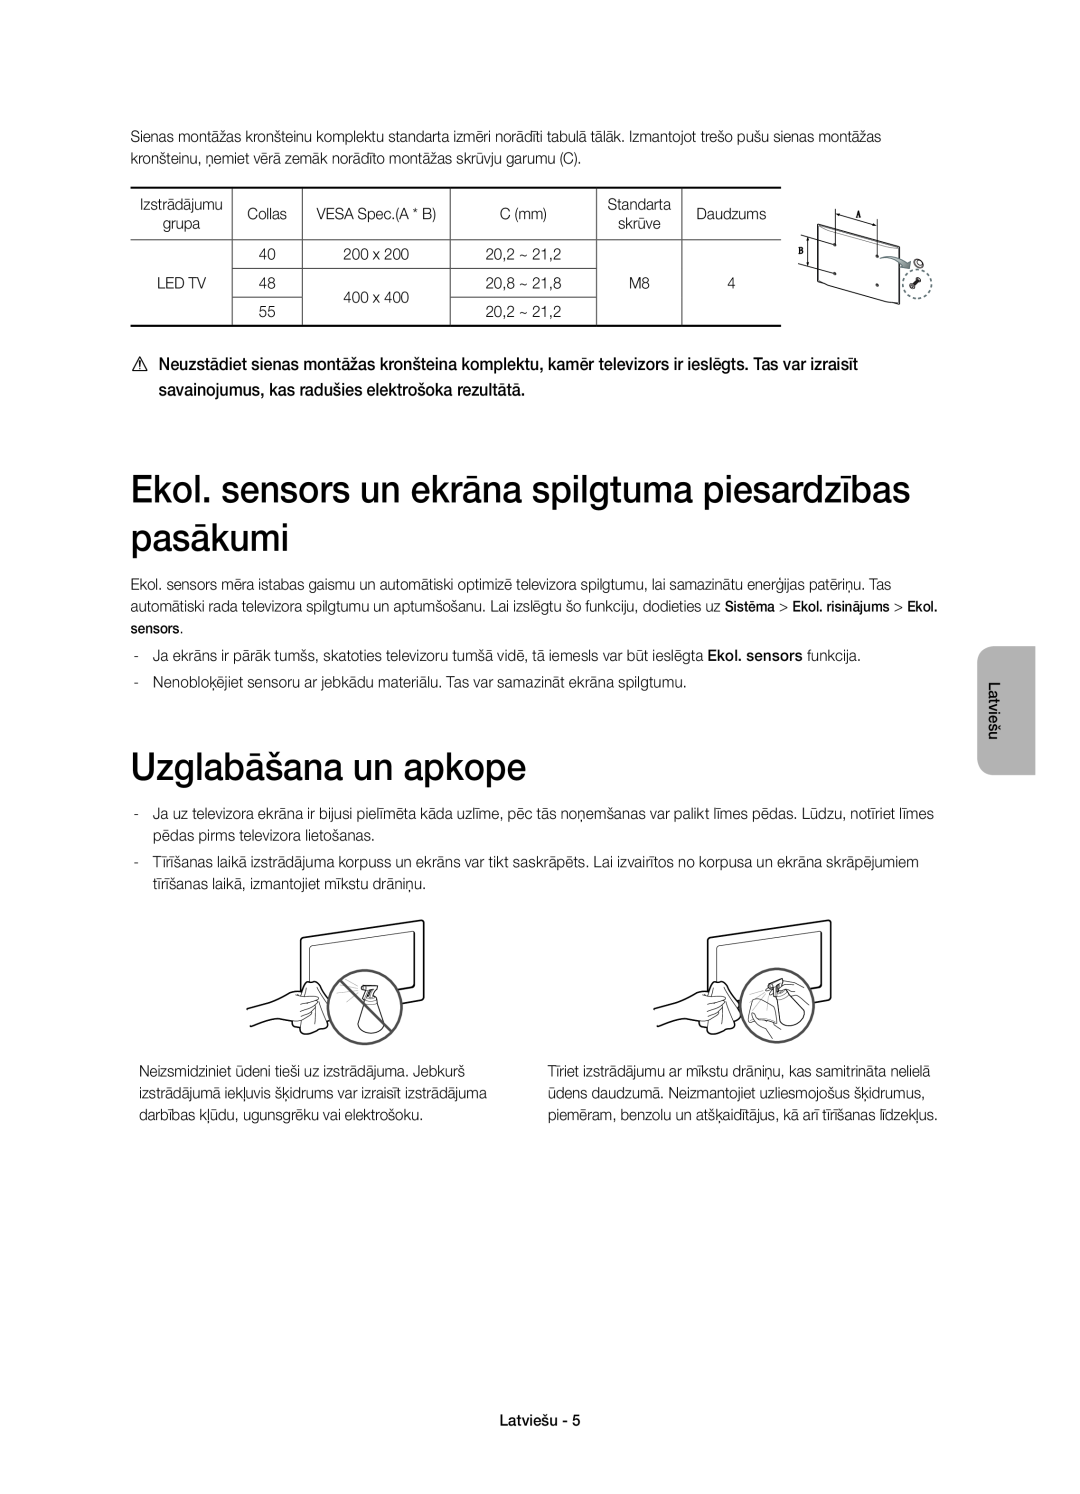 Samsung UE40H6500SLXXC, UE55H6700SLXXH manual Ekol. sensors un ekrāna spilgtuma piesardzības pasākumi, Uzglabāšana un apkope 